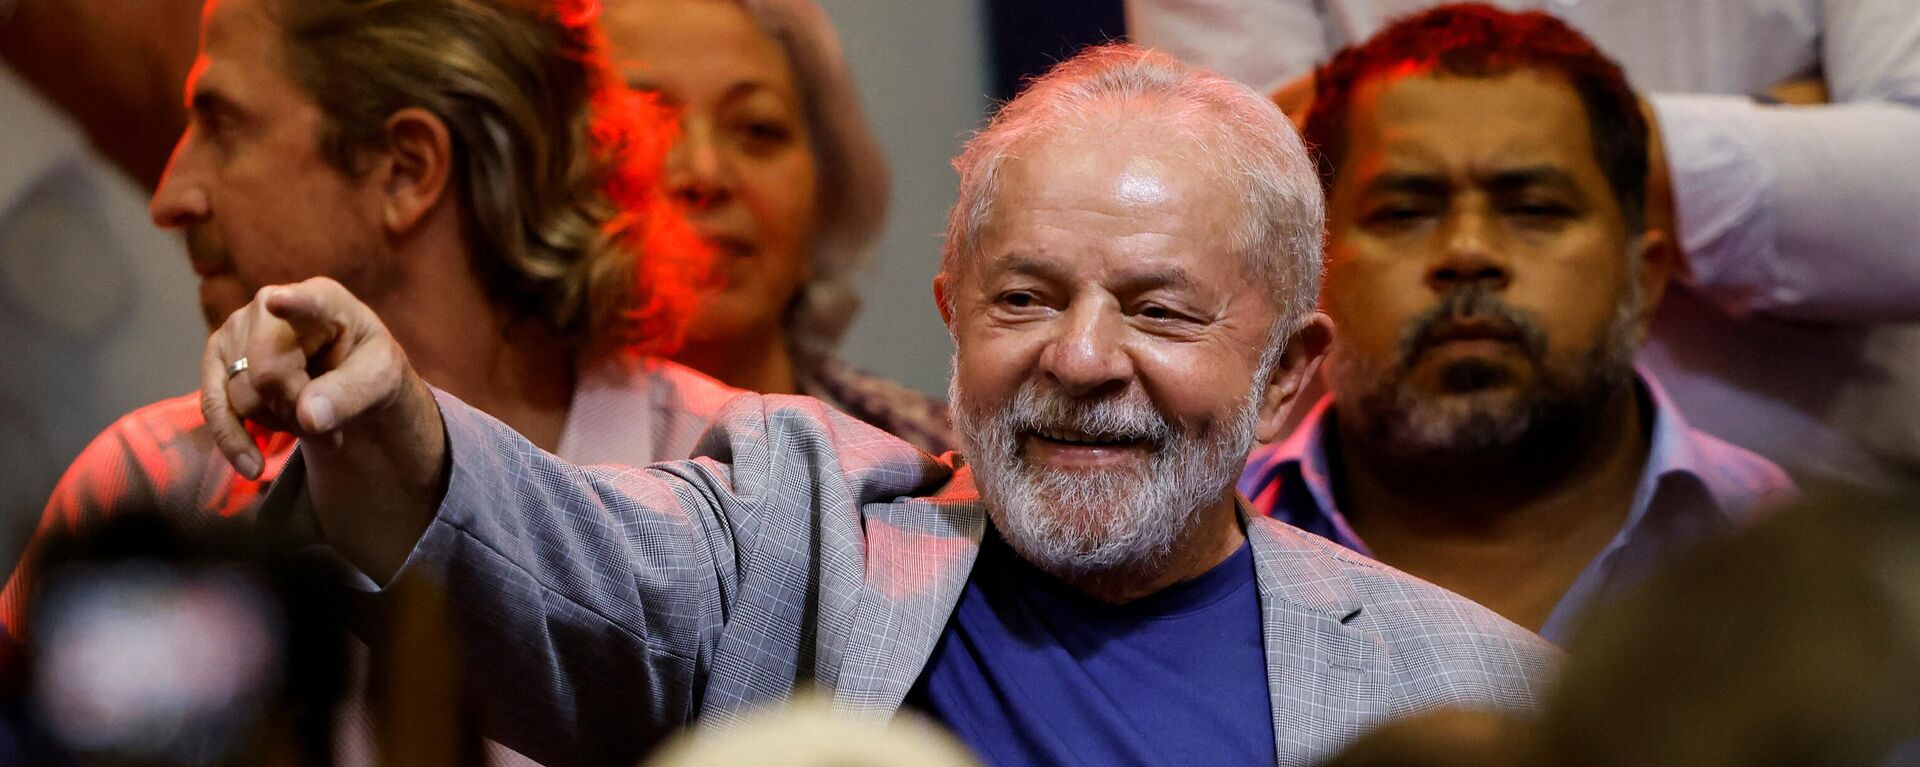 O ex-presidente Luiz Inácio Lula da Silva participa de evento do Partido dos Trabalhadores (PT) em Curitiba, no Brasil, em 18 de março de 2022. - Sputnik Brasil, 1920, 06.04.2022